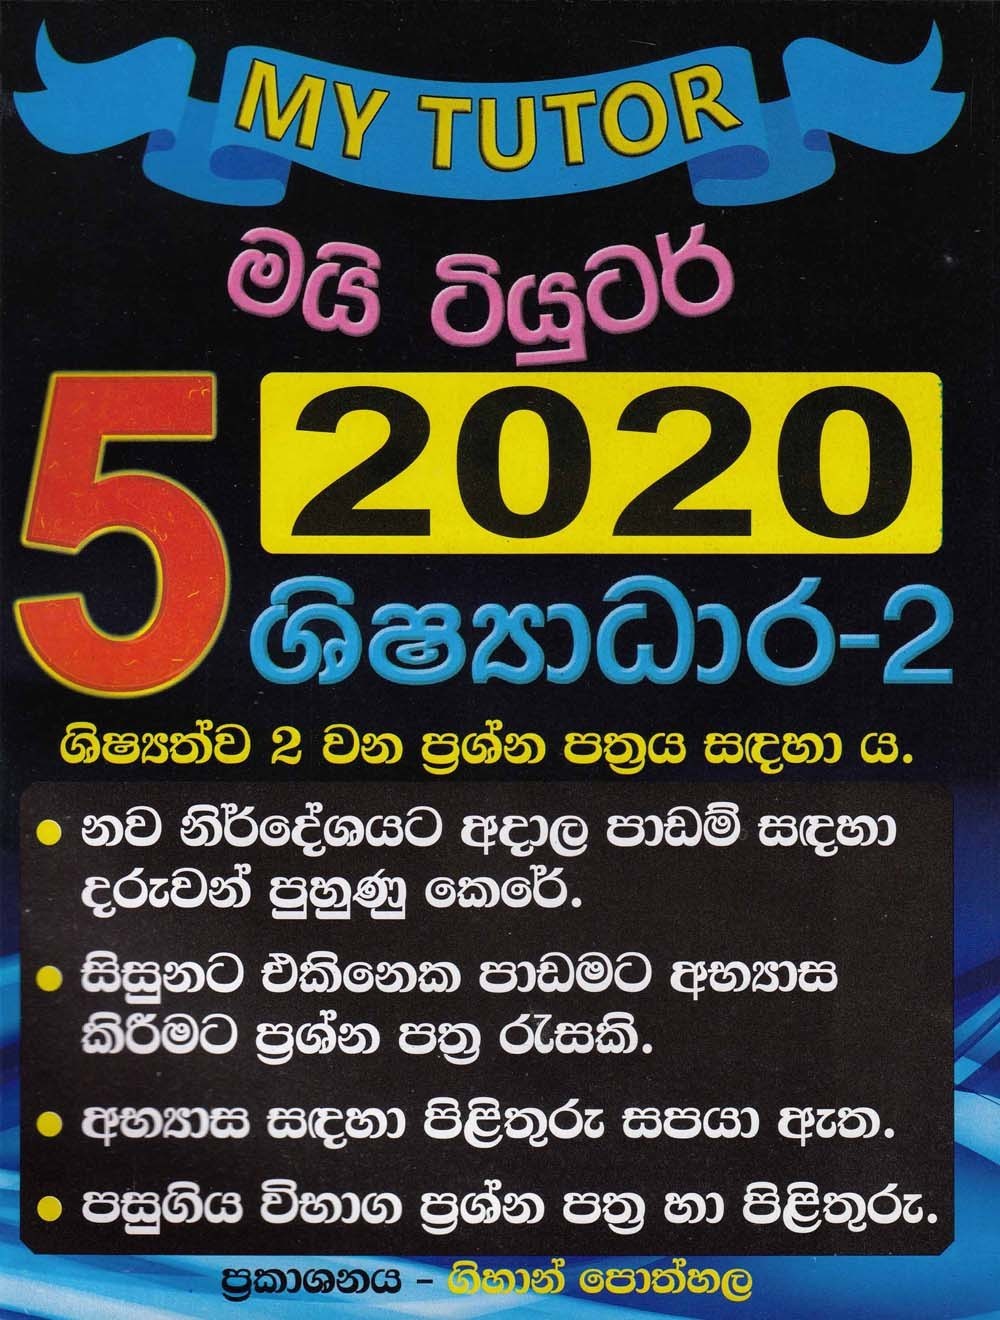 5 shishadara 2 2020